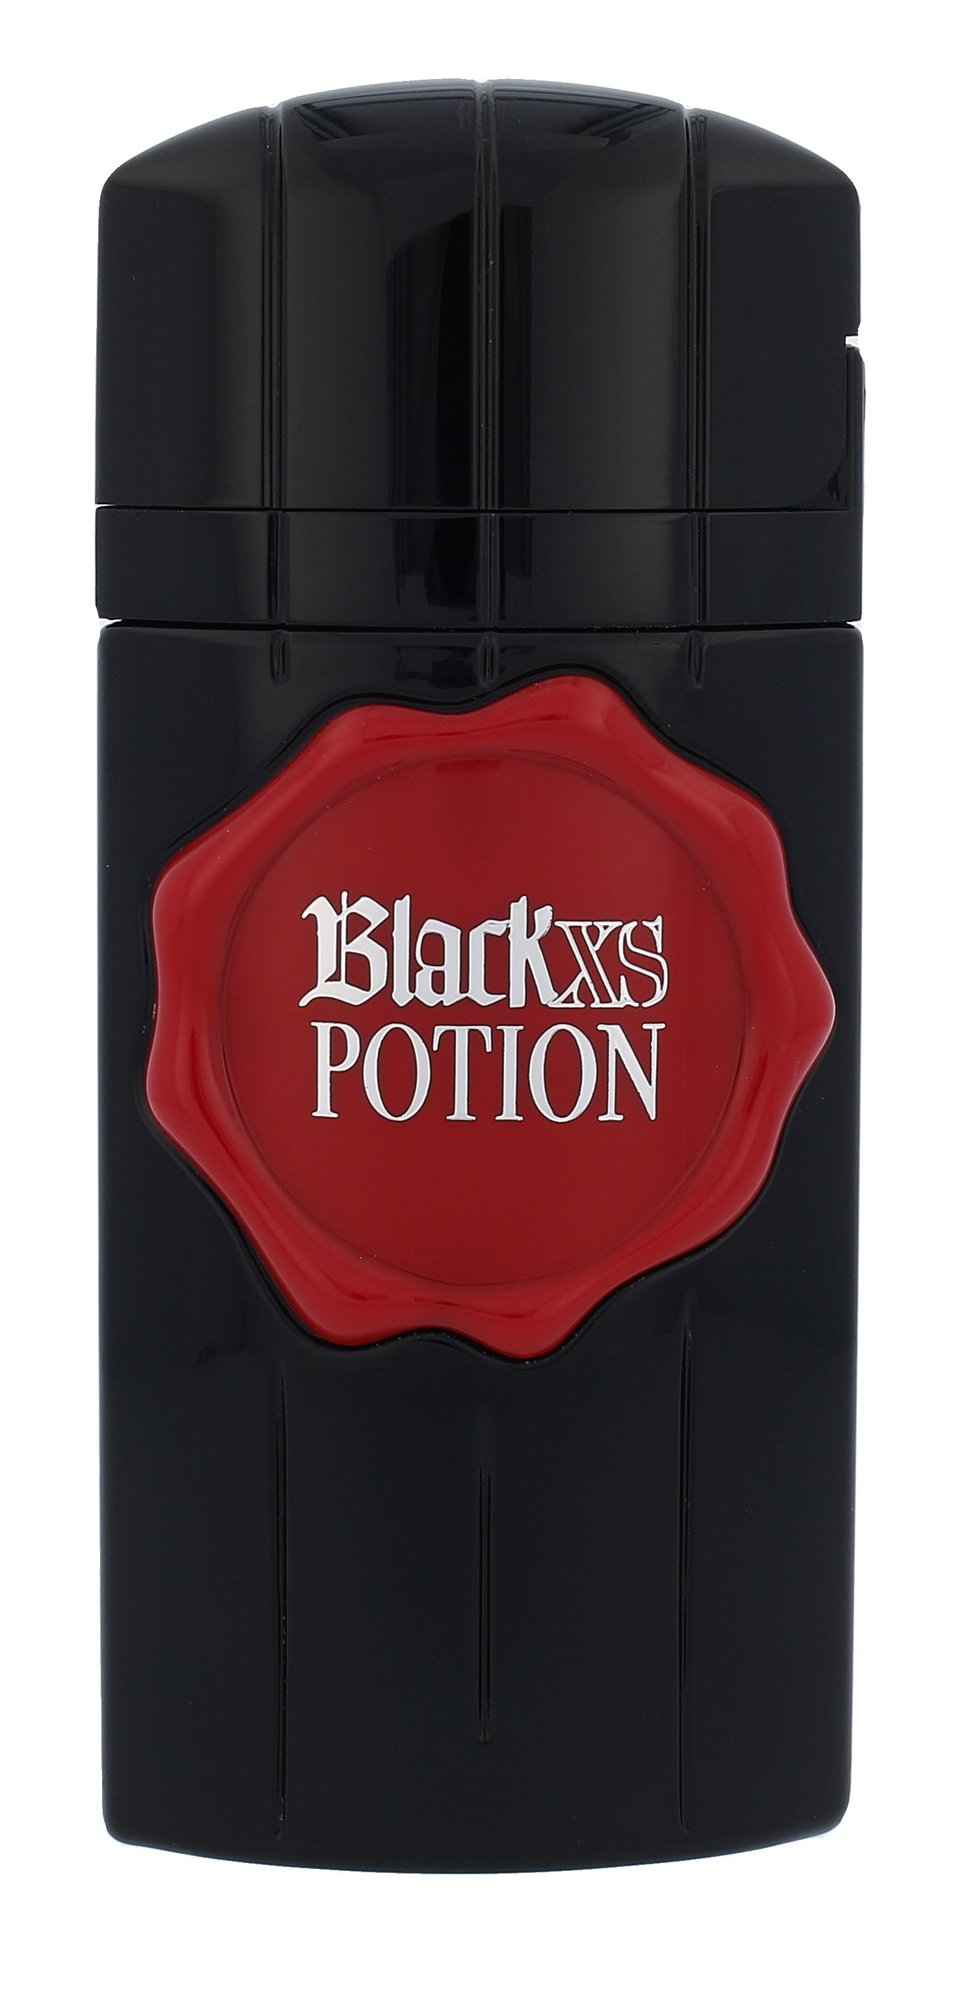 Paco Rabanne Black XS Potion